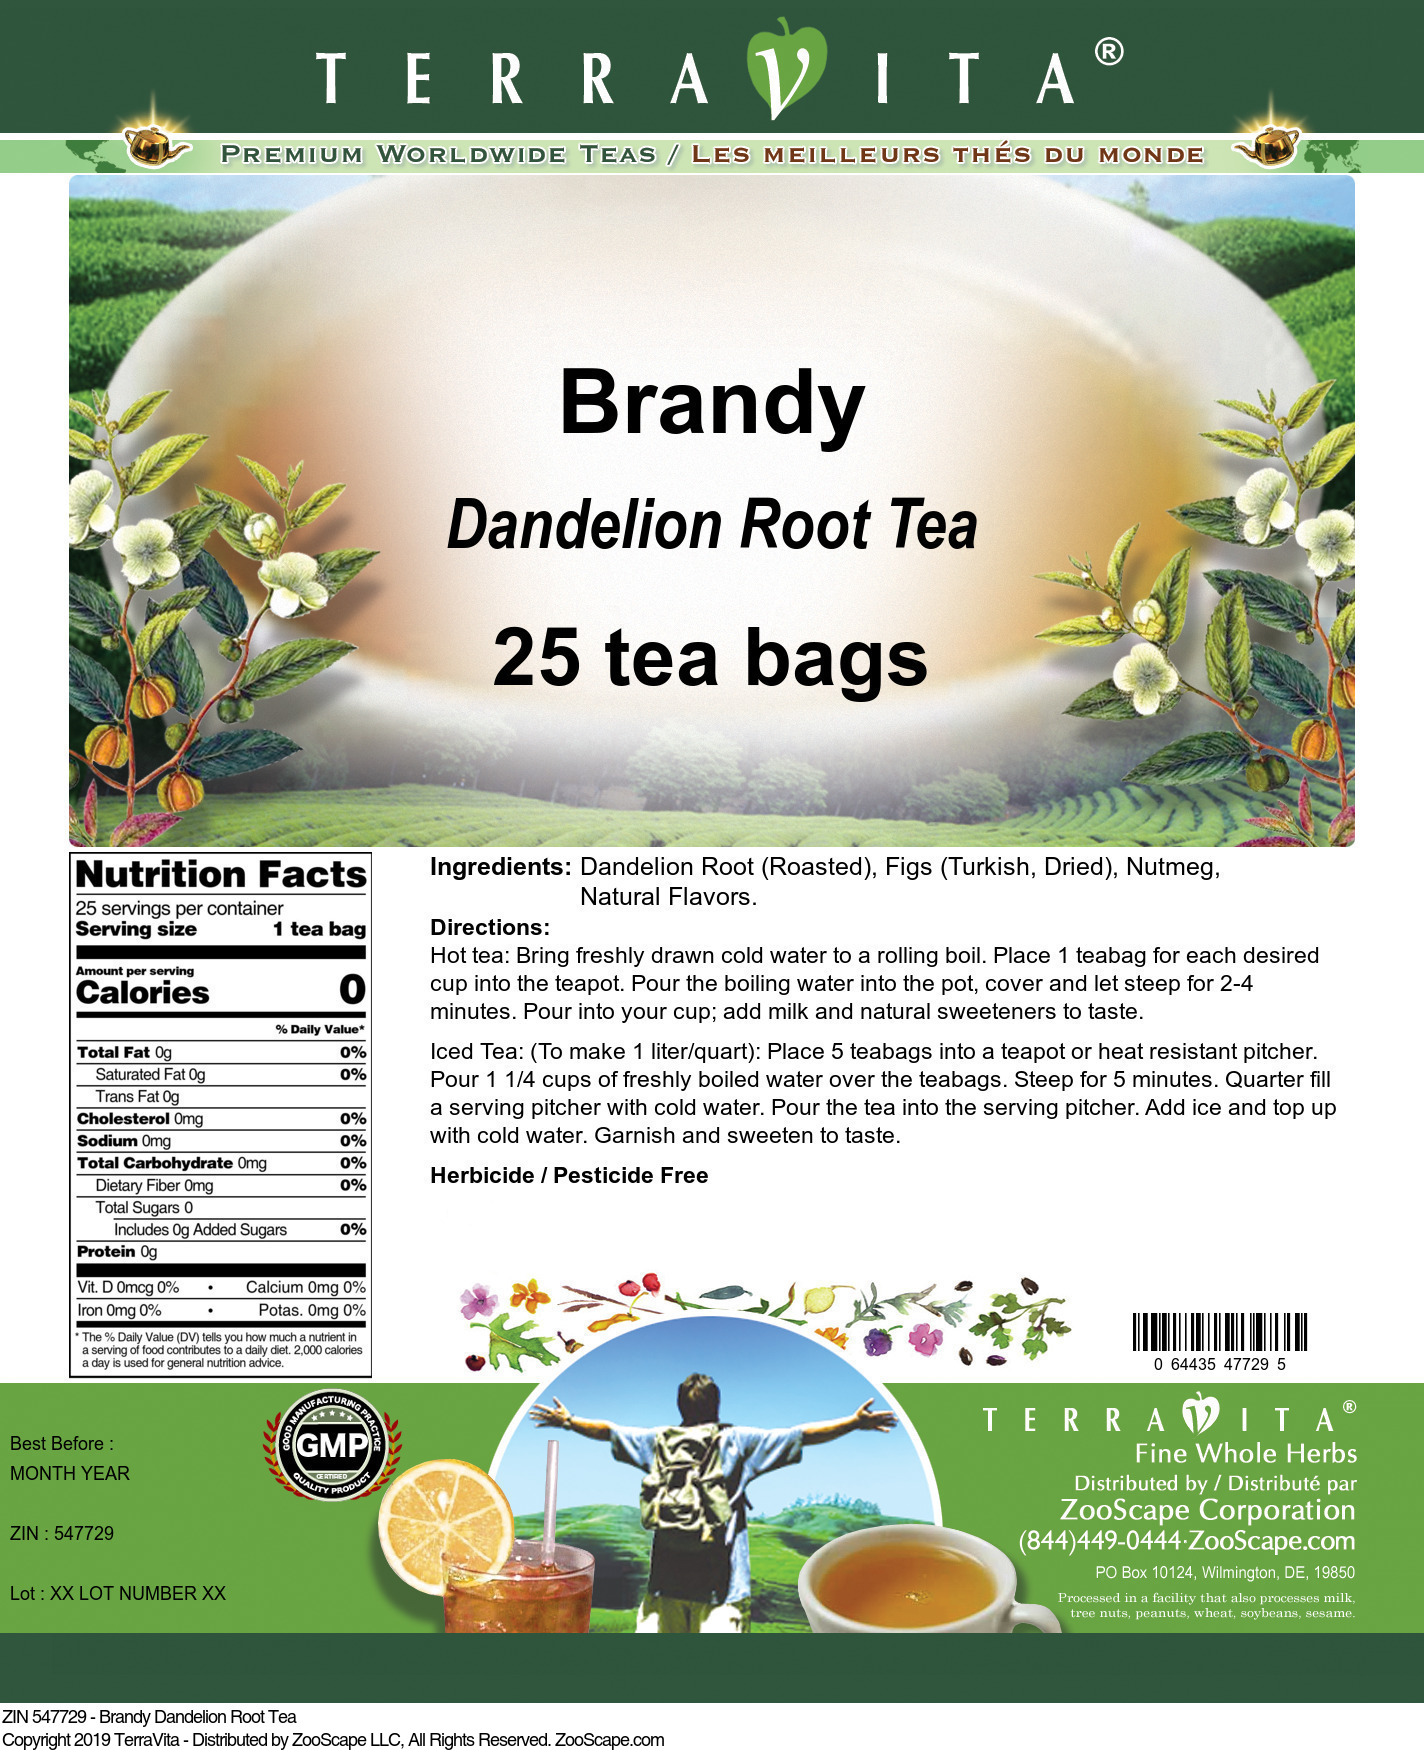 Brandy Dandelion Root Tea - Label